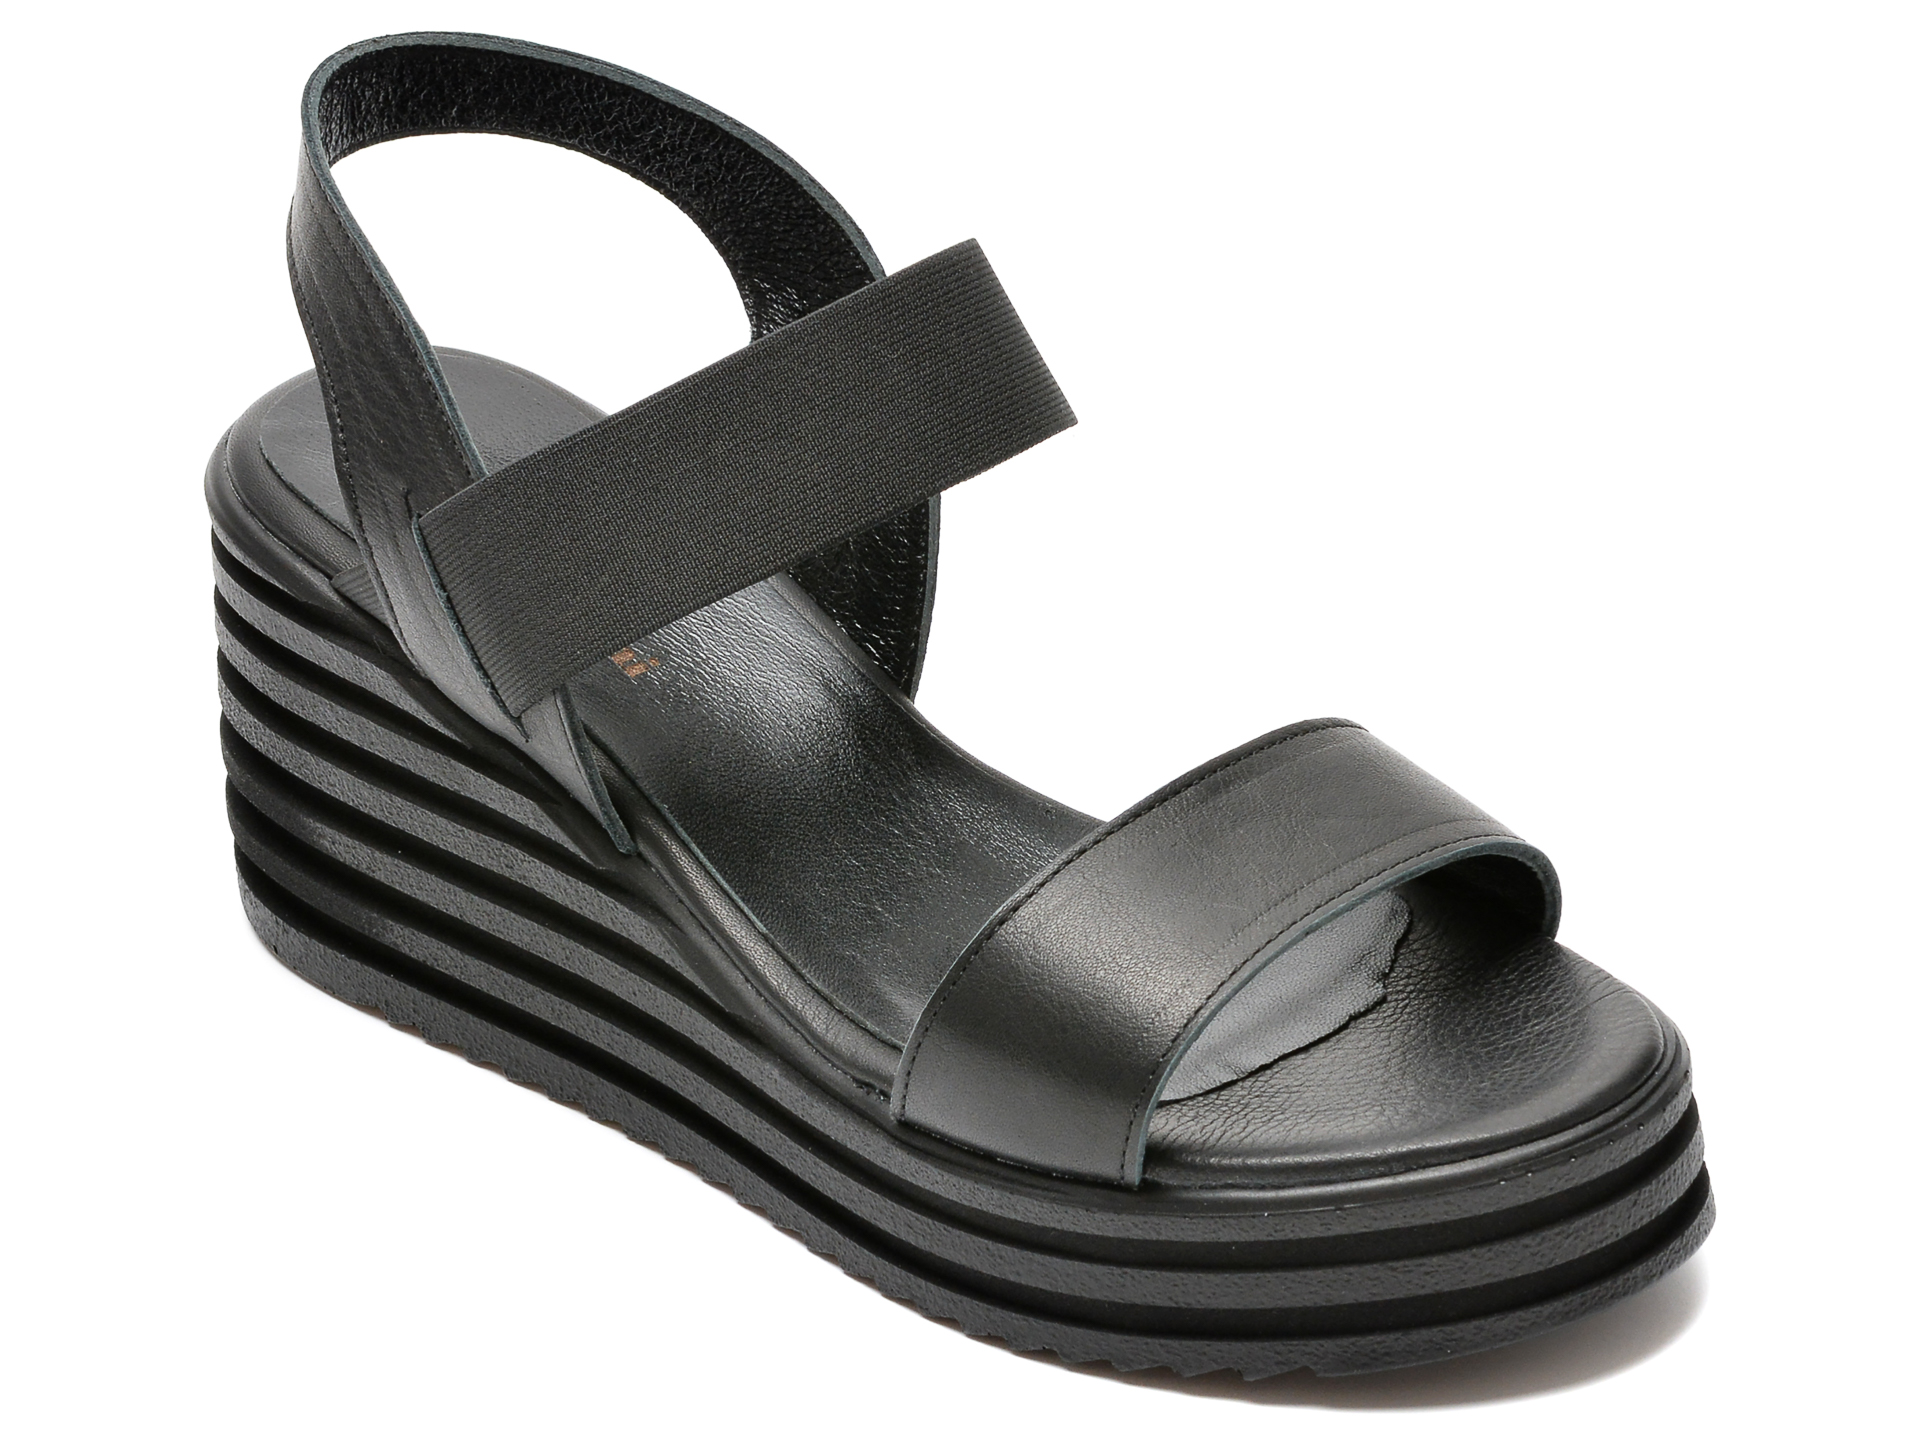 Sandale FLAVIA PASSINI negre, A316, din piele naturala Flavia Passini